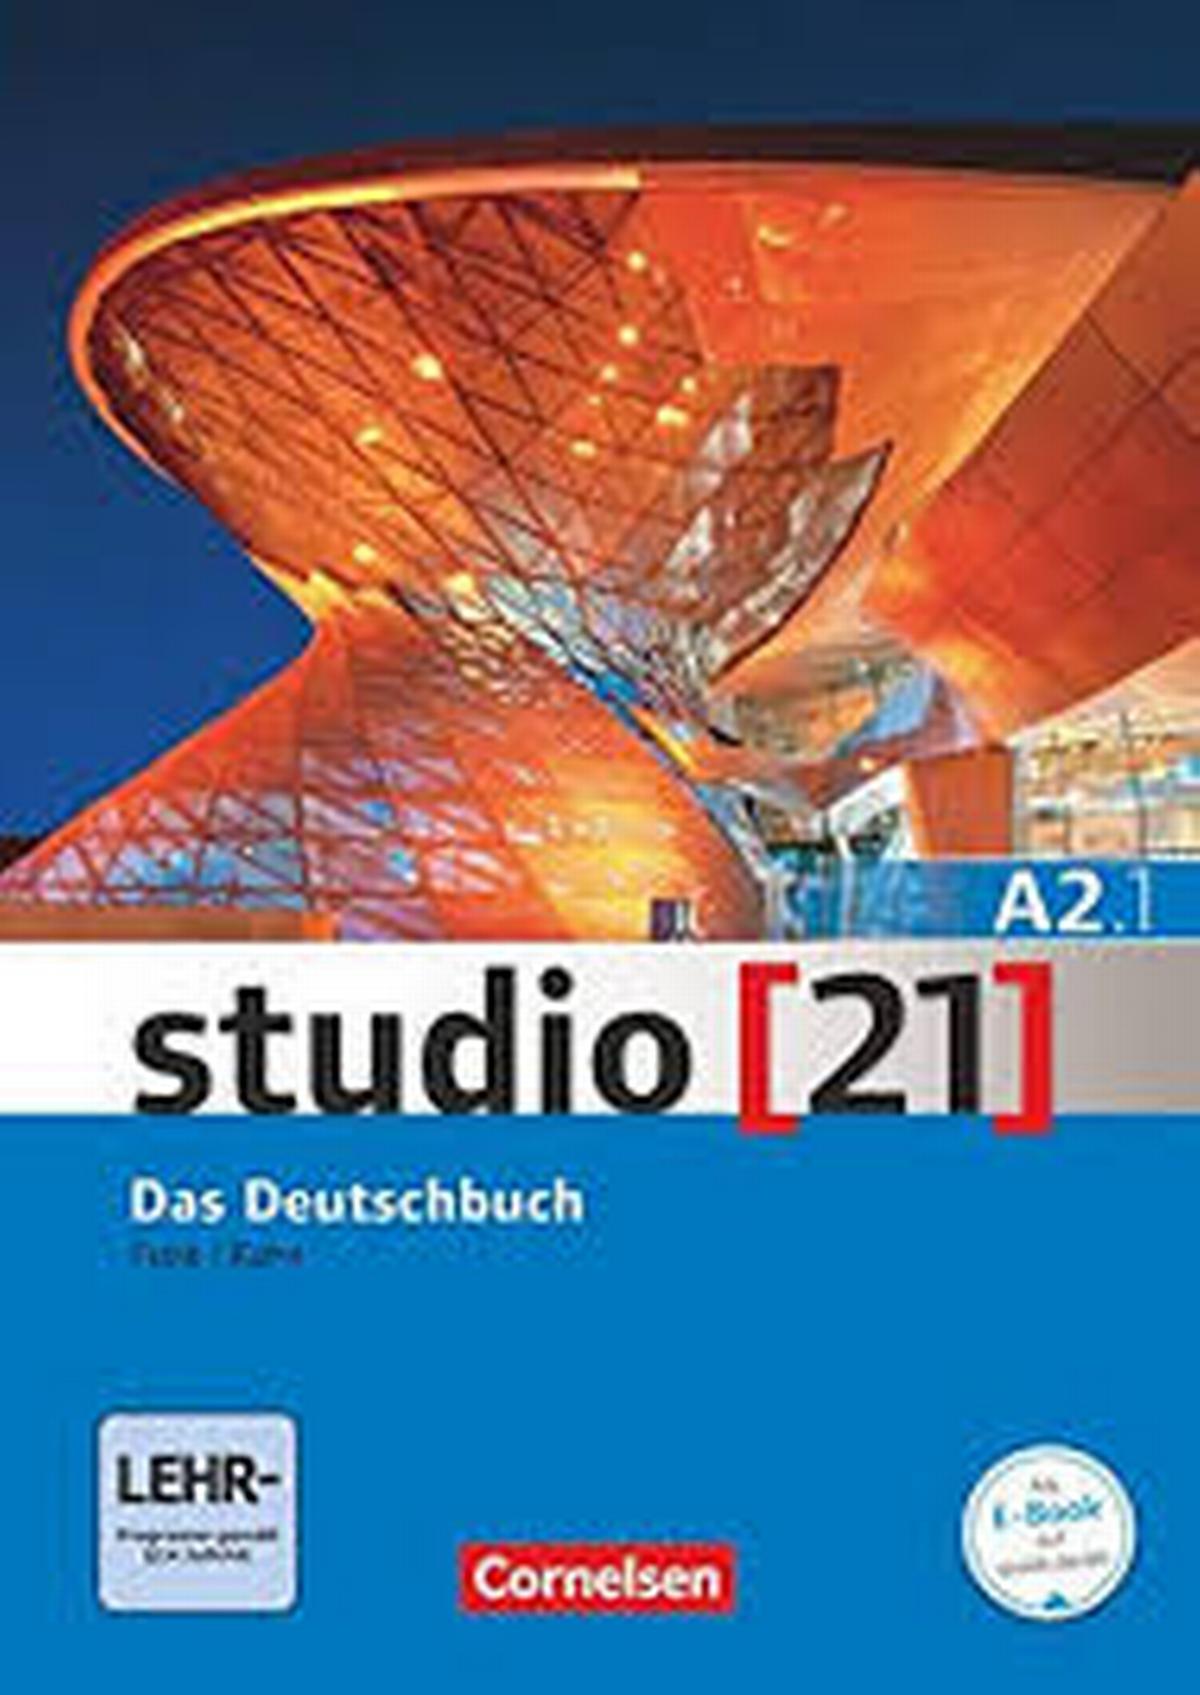 Studio 21 Das Deutschbuch A2.1